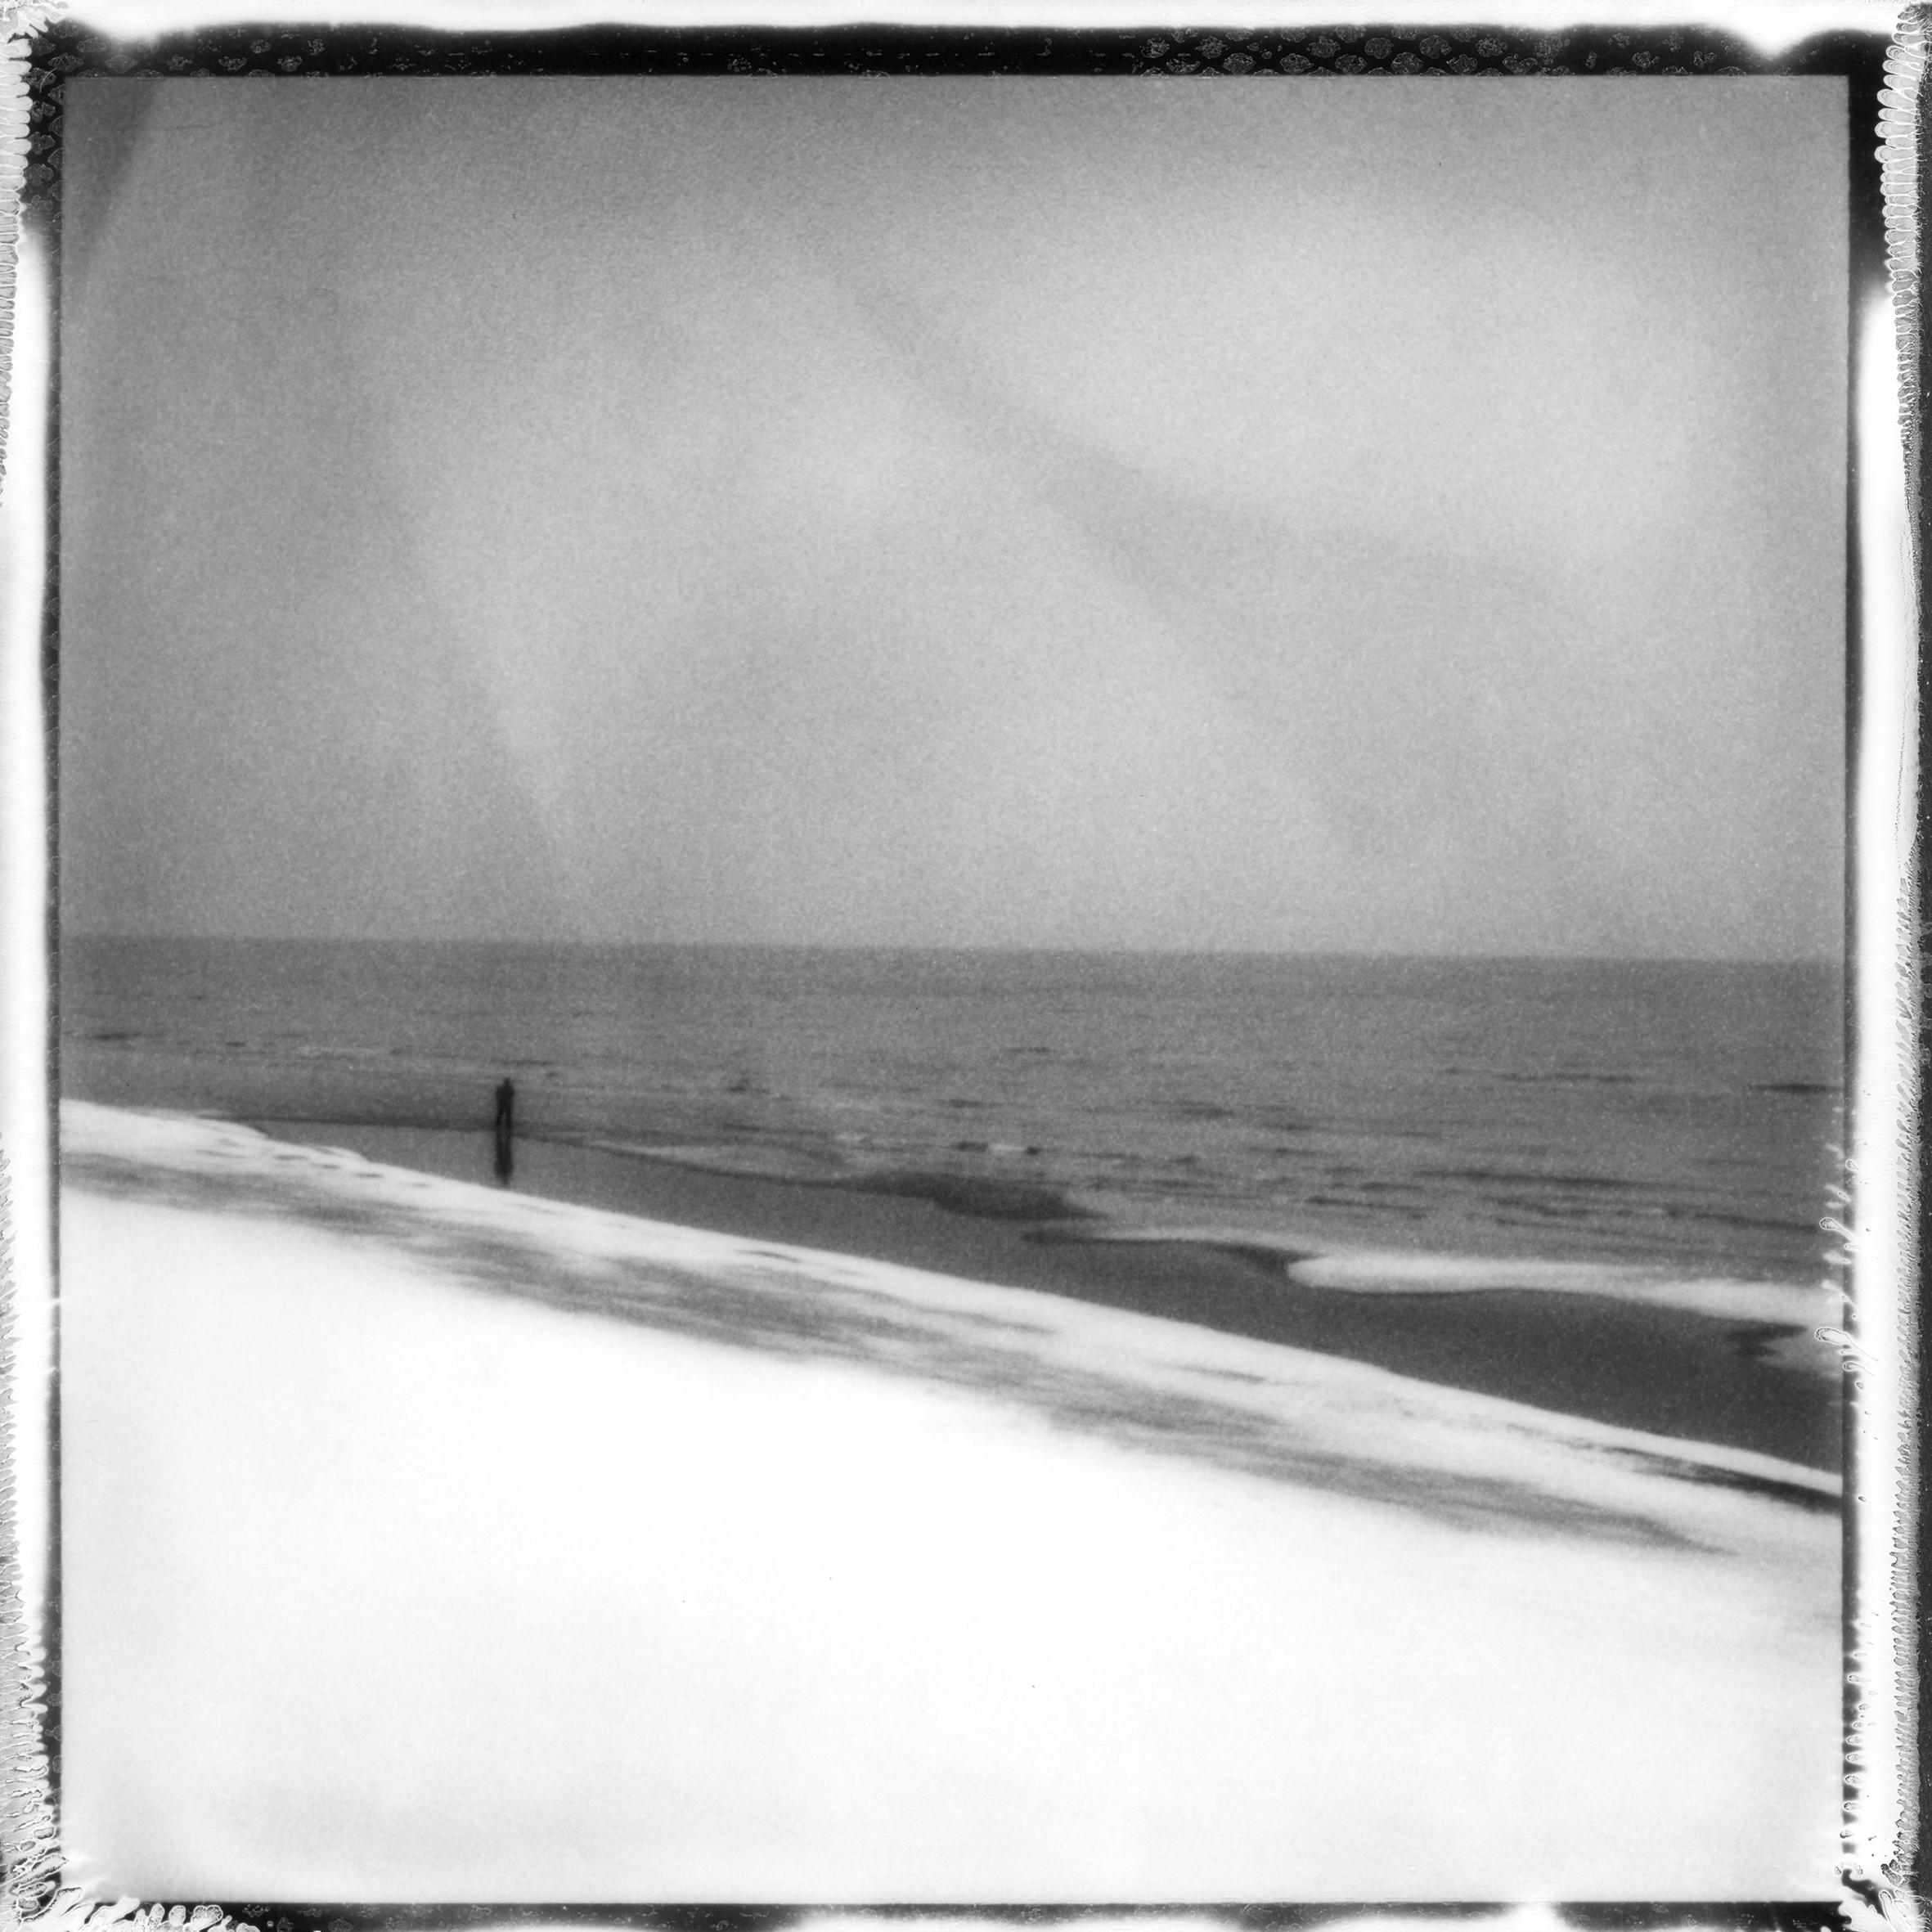 Ugne Pouwell Landscape Photograph – „Frozen beach #6“ – Schwarz-Weiß- analoge Landschaftsfotografie in Schwarz-Weiß